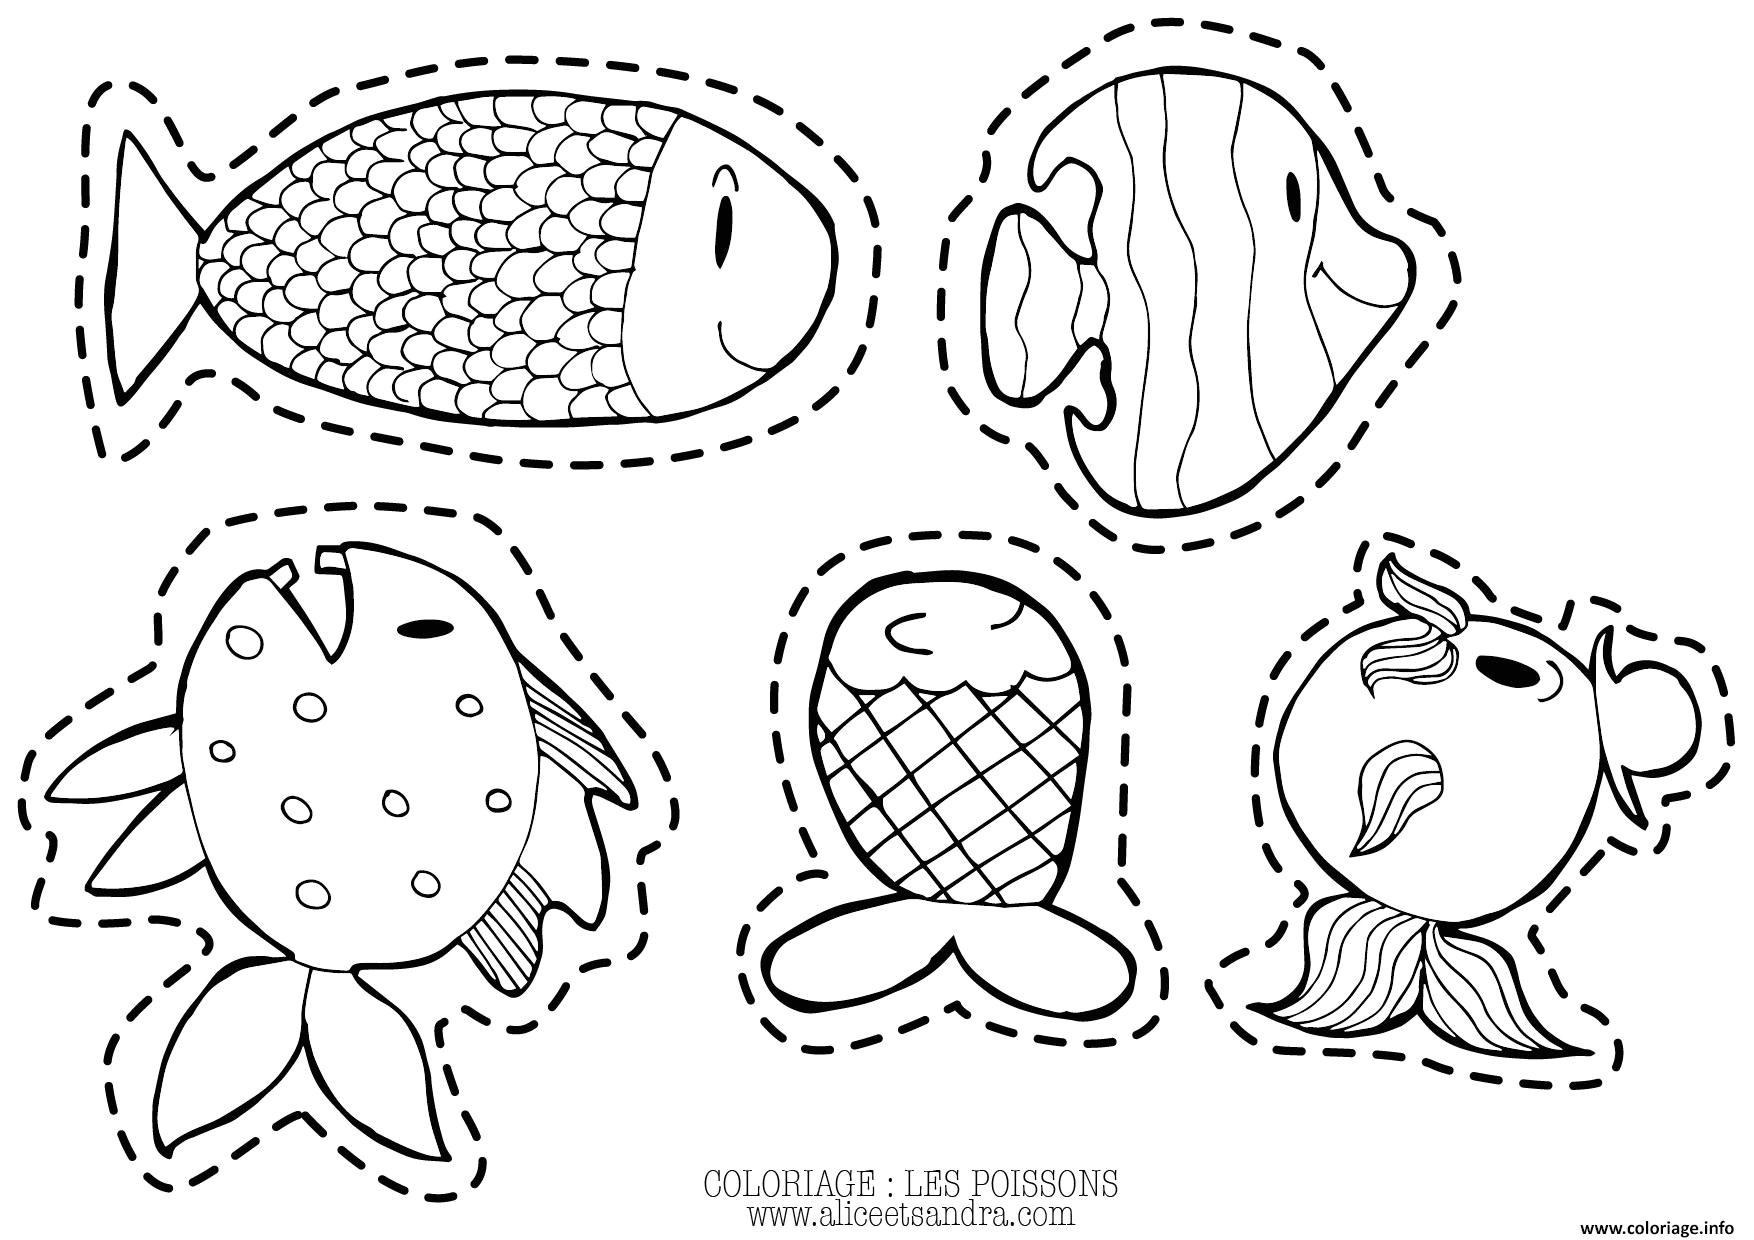 les poissons d avril par alice et sandra coloriage dessin